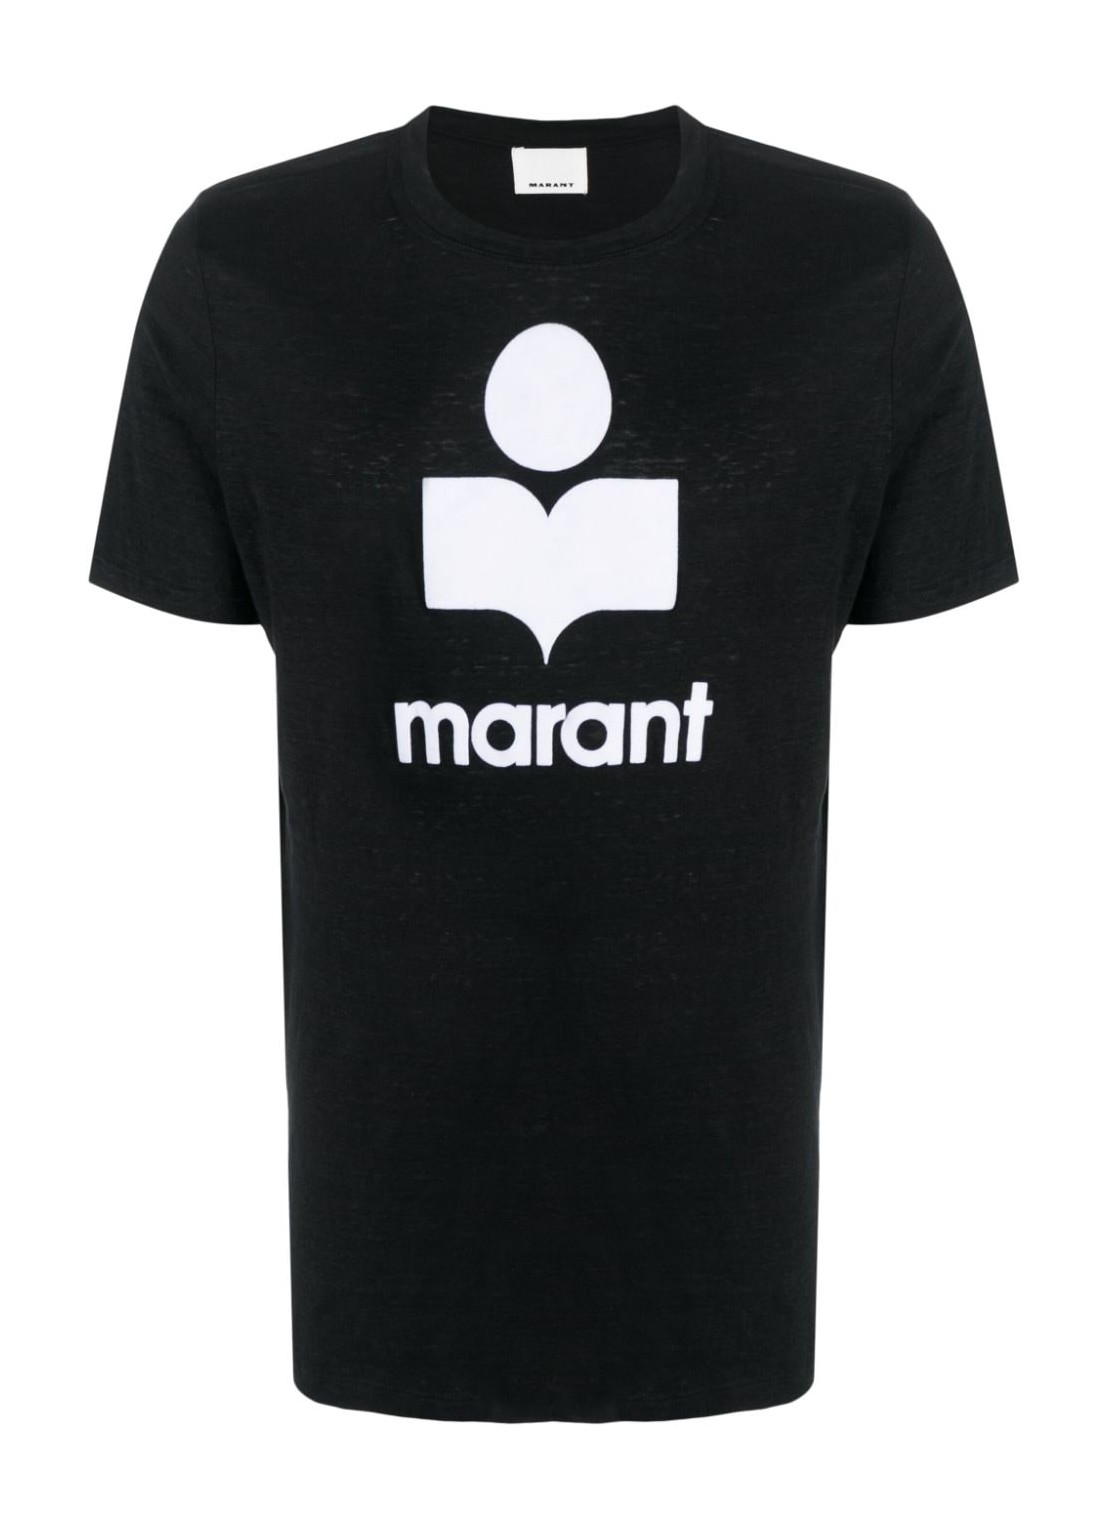 Camiseta isabel marant t-shirt man karman-gb 24pts0045hab1n22h 01bk talla S
 